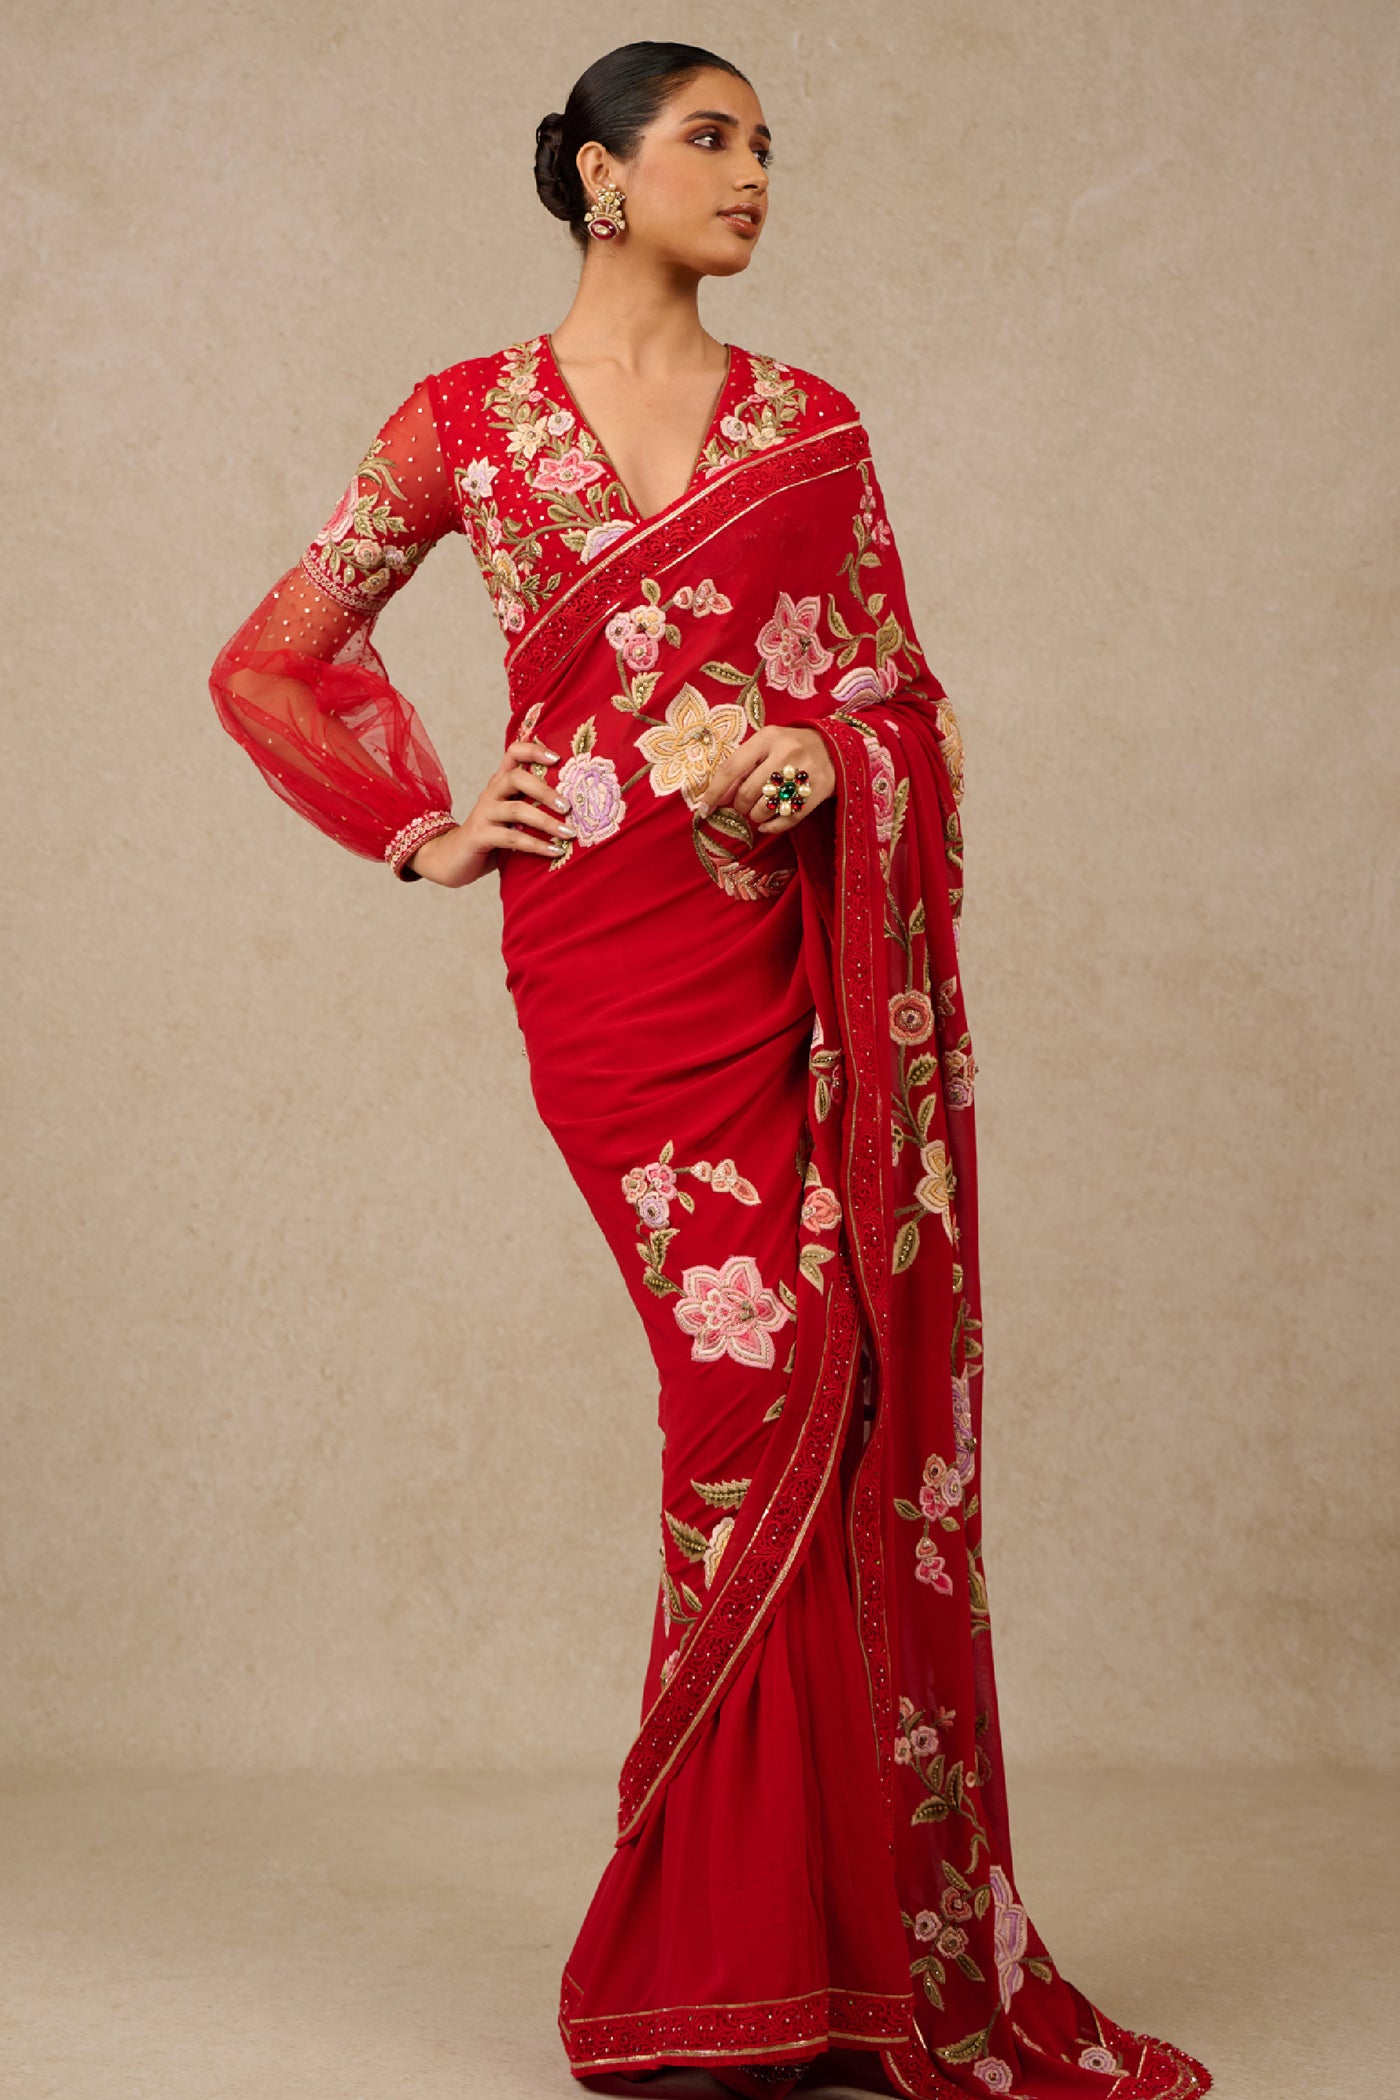 Tarun Tahiliani Saree Blouse Red Indian designer wear online shopping melange singapore